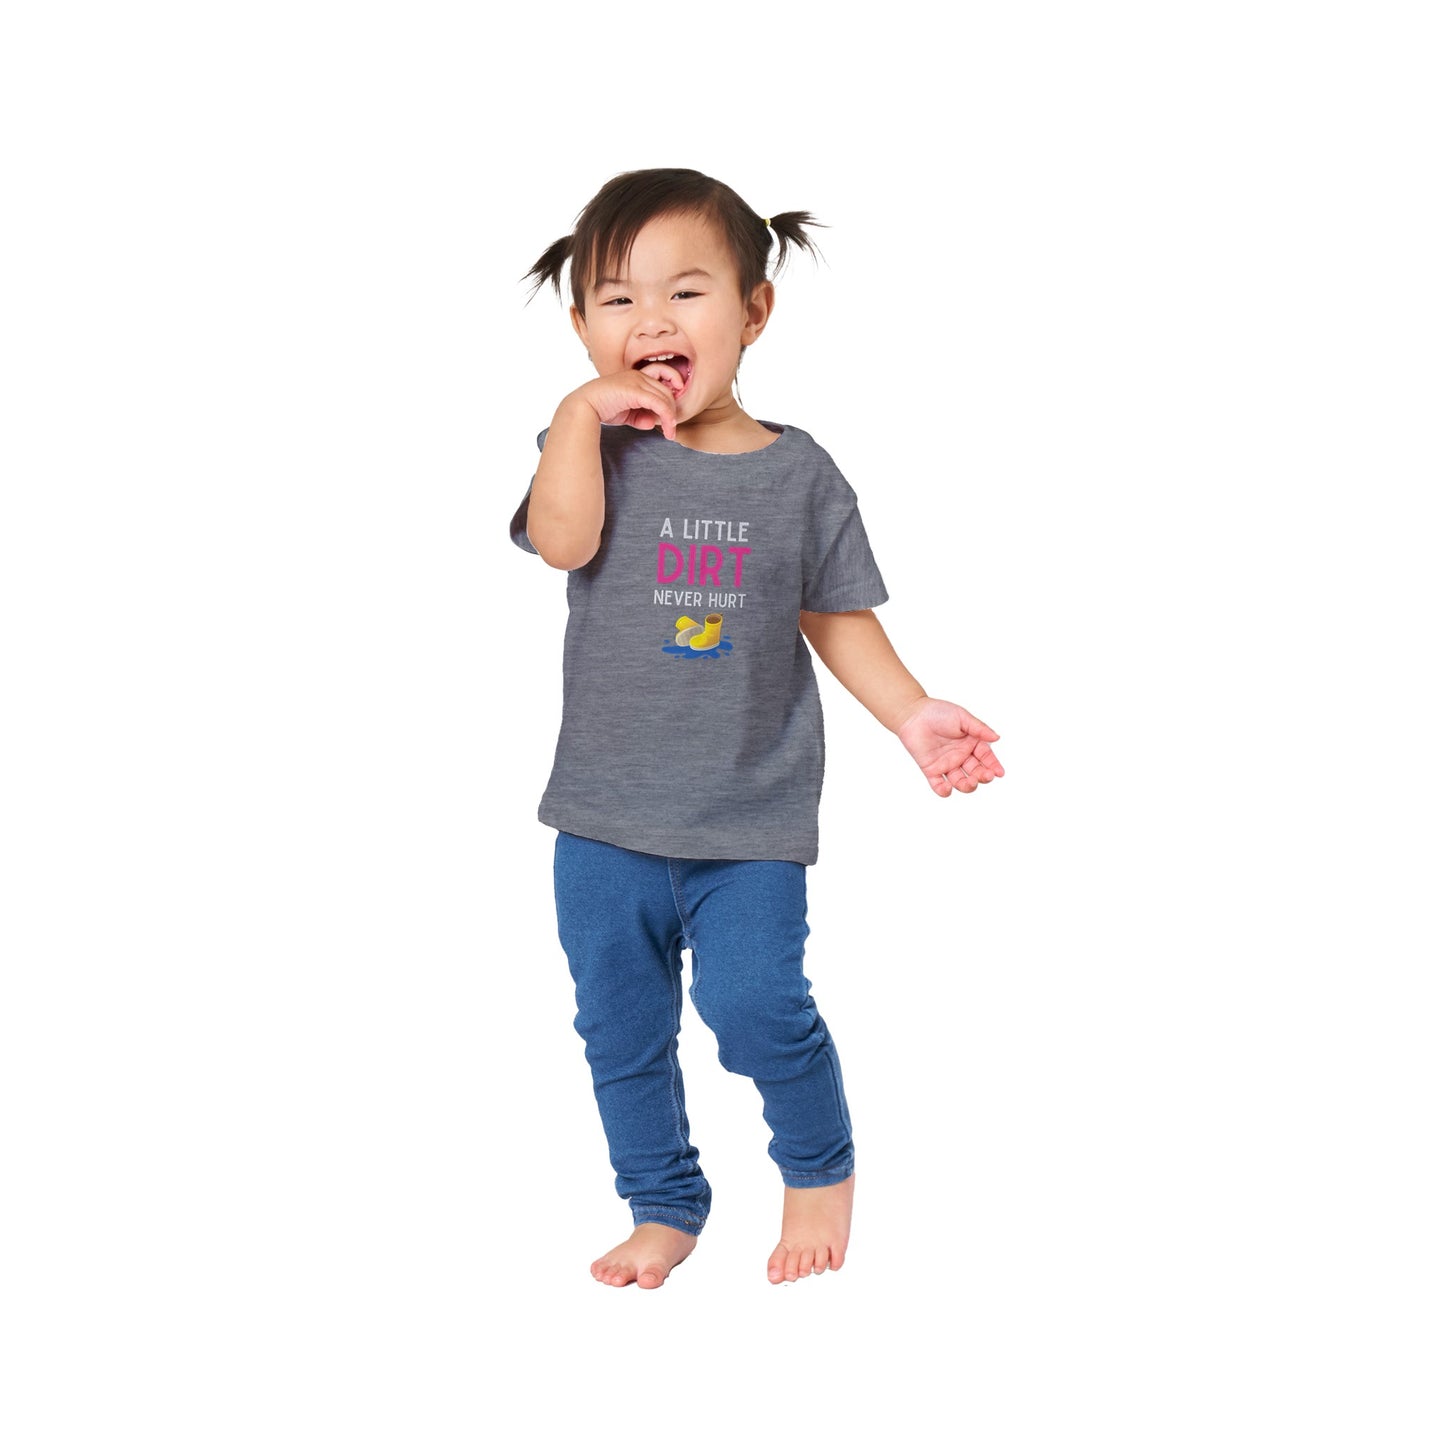 Baby 'A Little Dirt' Classic T-shirt